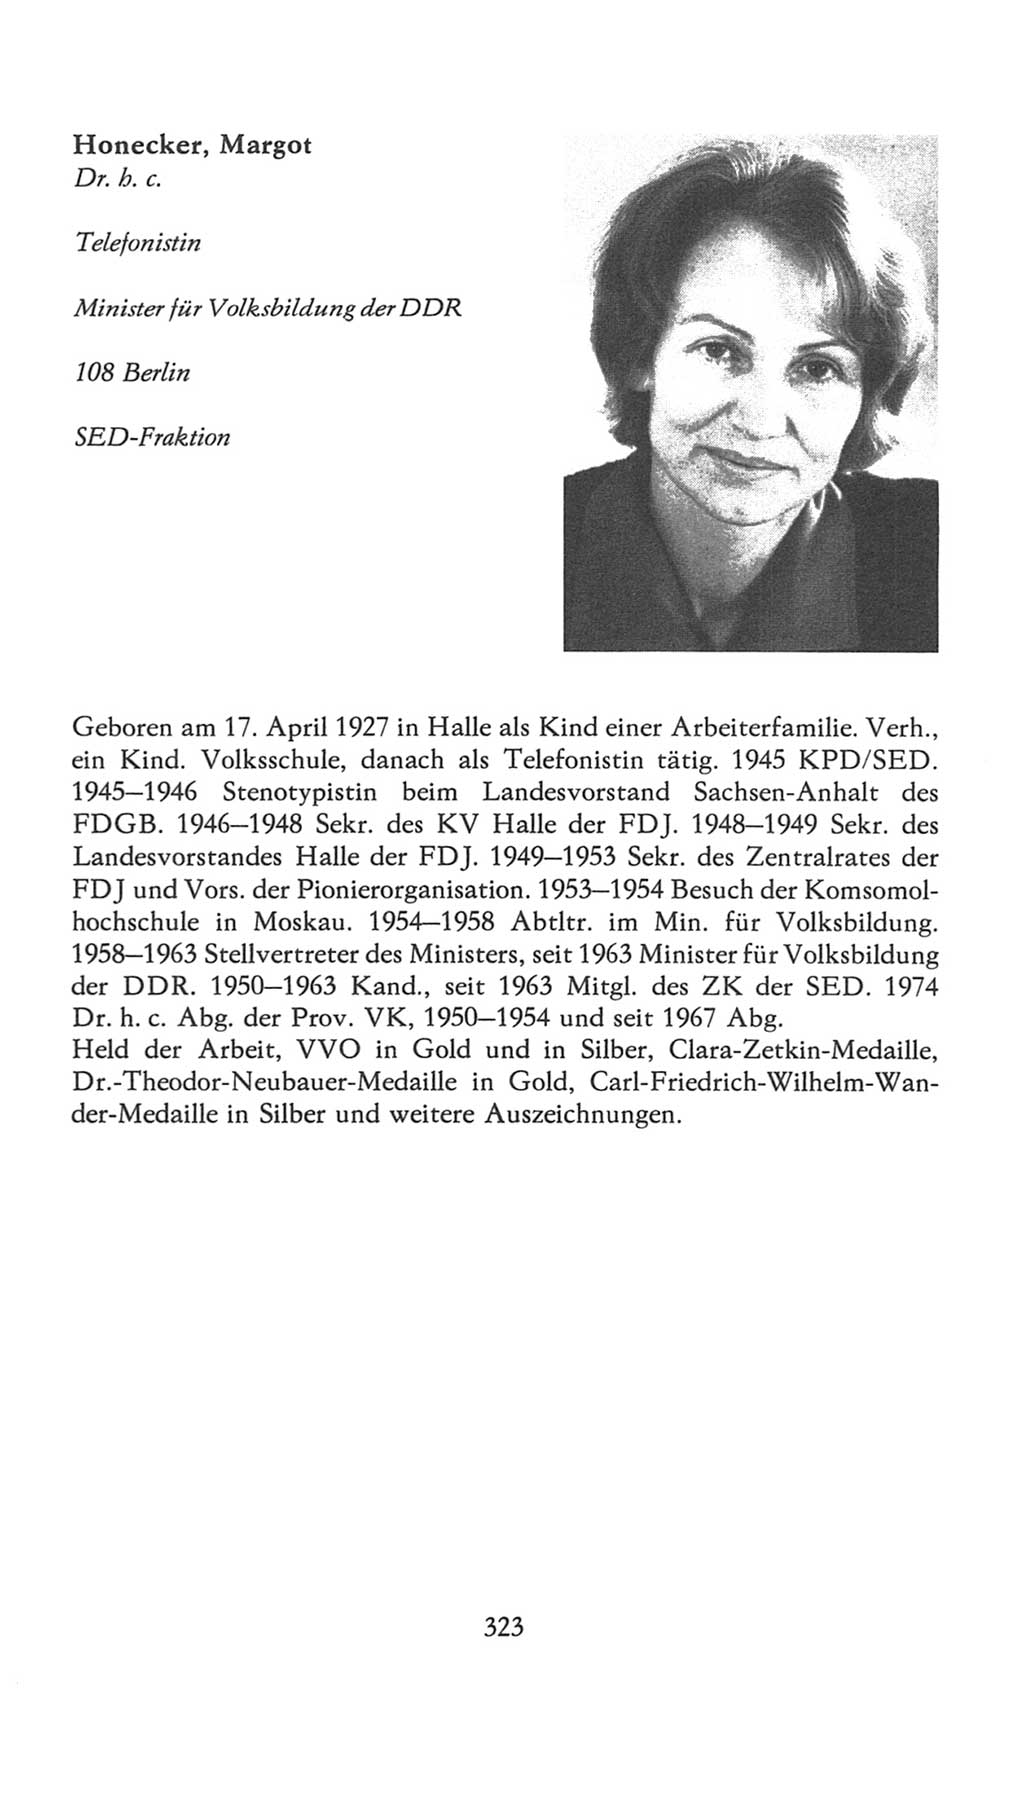 Volkskammer (VK) der Deutschen Demokratischen Republik (DDR), 7. Wahlperiode 1976-1981, Seite 323 (VK. DDR 7. WP. 1976-1981, S. 323)